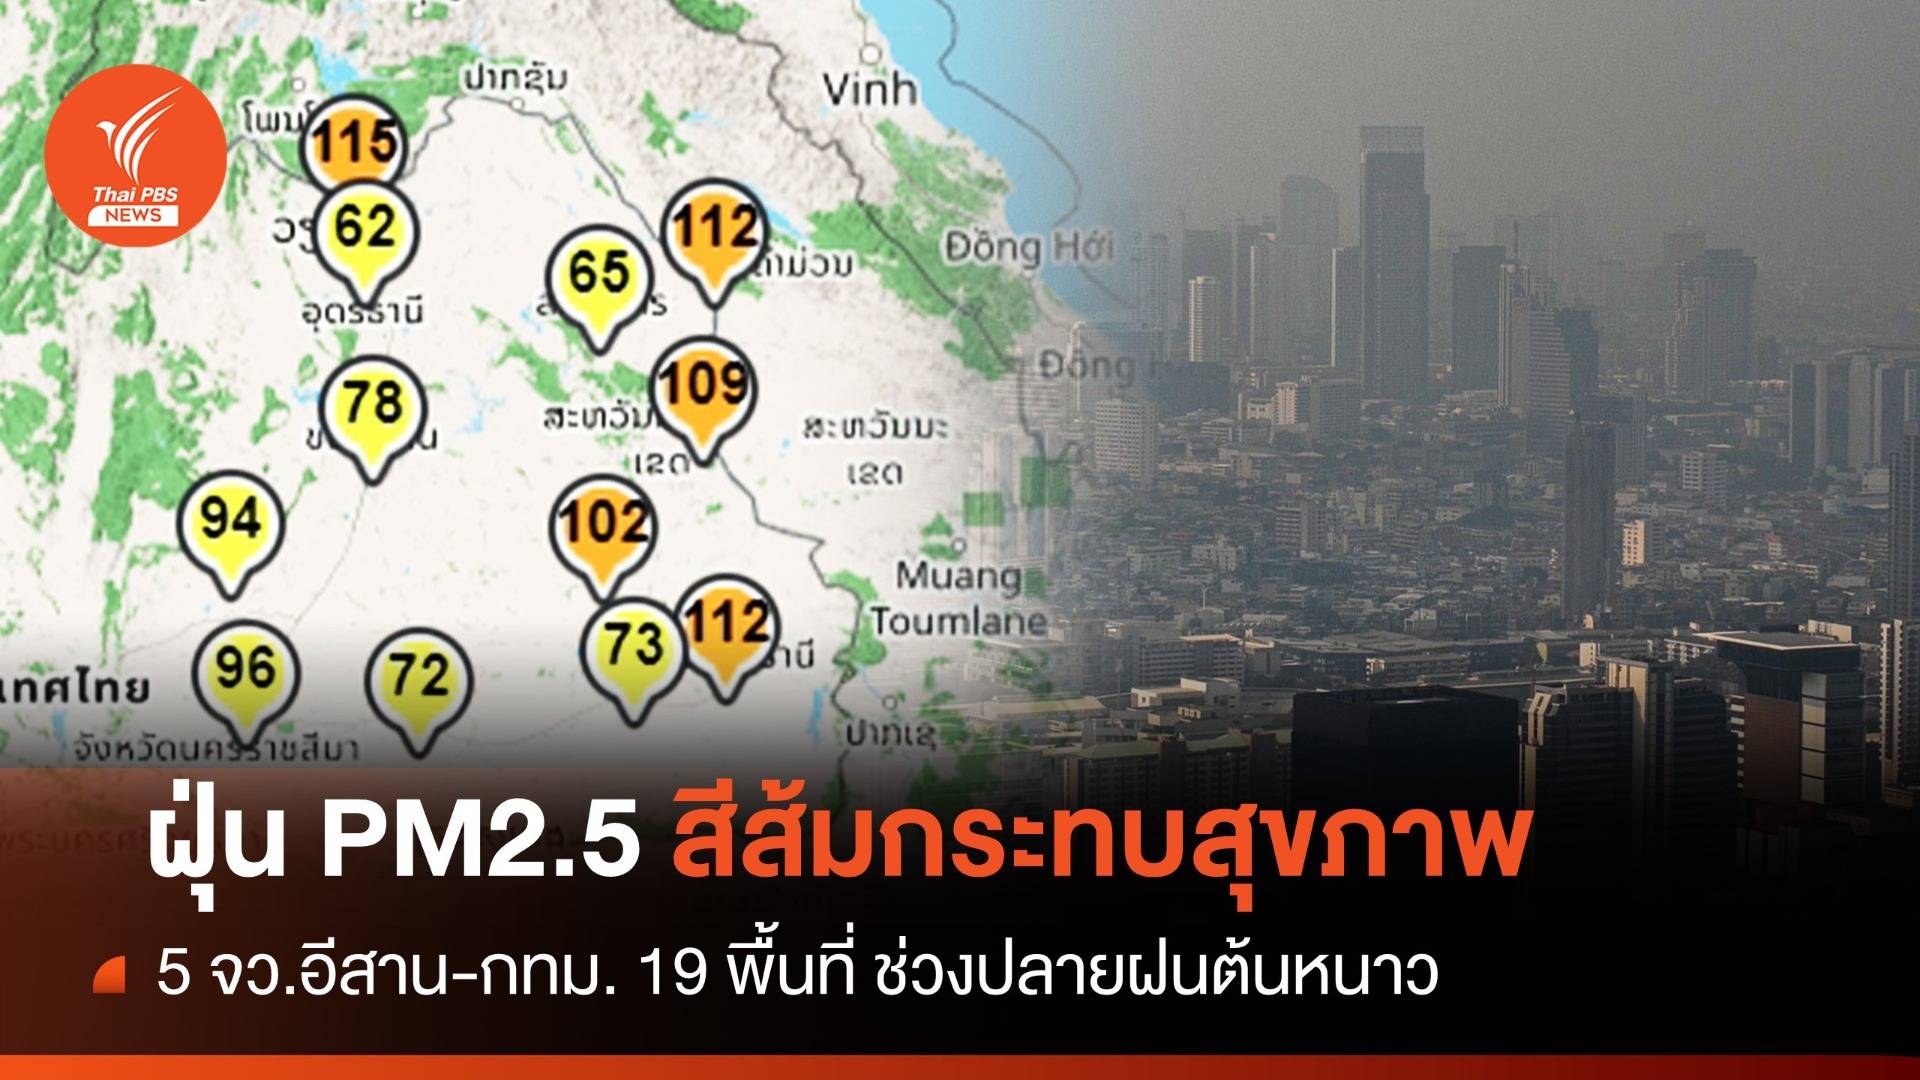 ฝุ่น PM 2.5 ภาคอีสาน 5 จว.ระดับสีส้ม-ช่วงปลายฝนต้นหนาว  